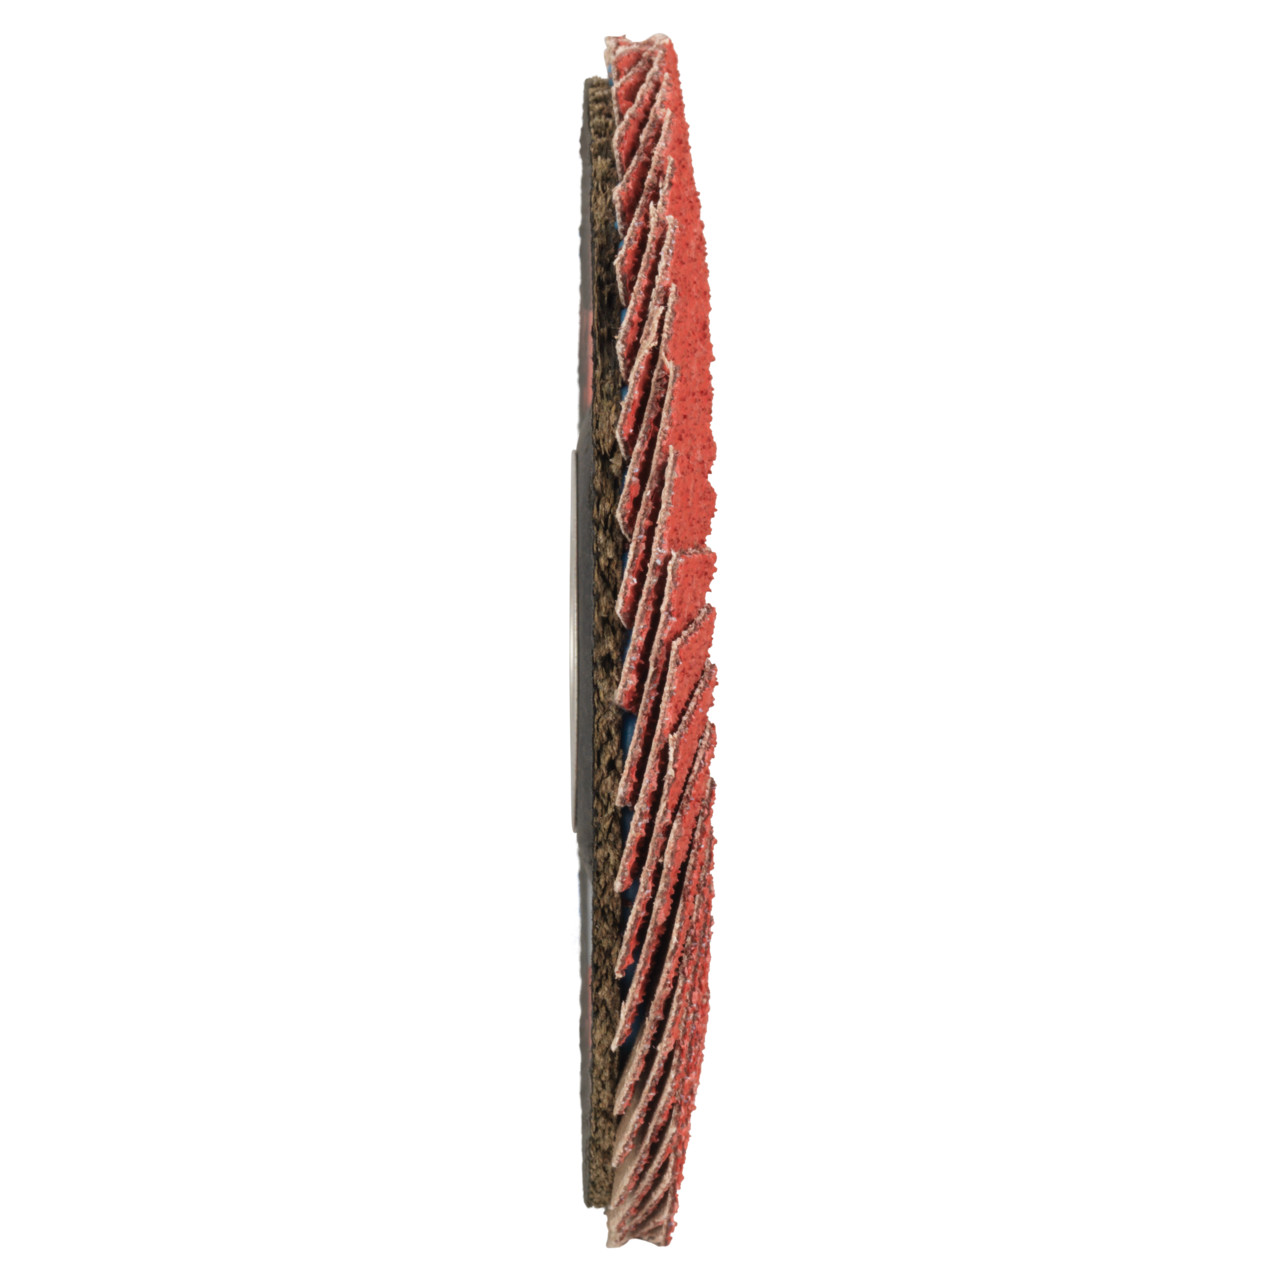 Tyrolit Rondelle éventail DxH 178x22,23 CERAMIC pour acier inoxydable, P80, forme : 28A - modèle droit (modèle à corps en fibre de verre), art. 34166861